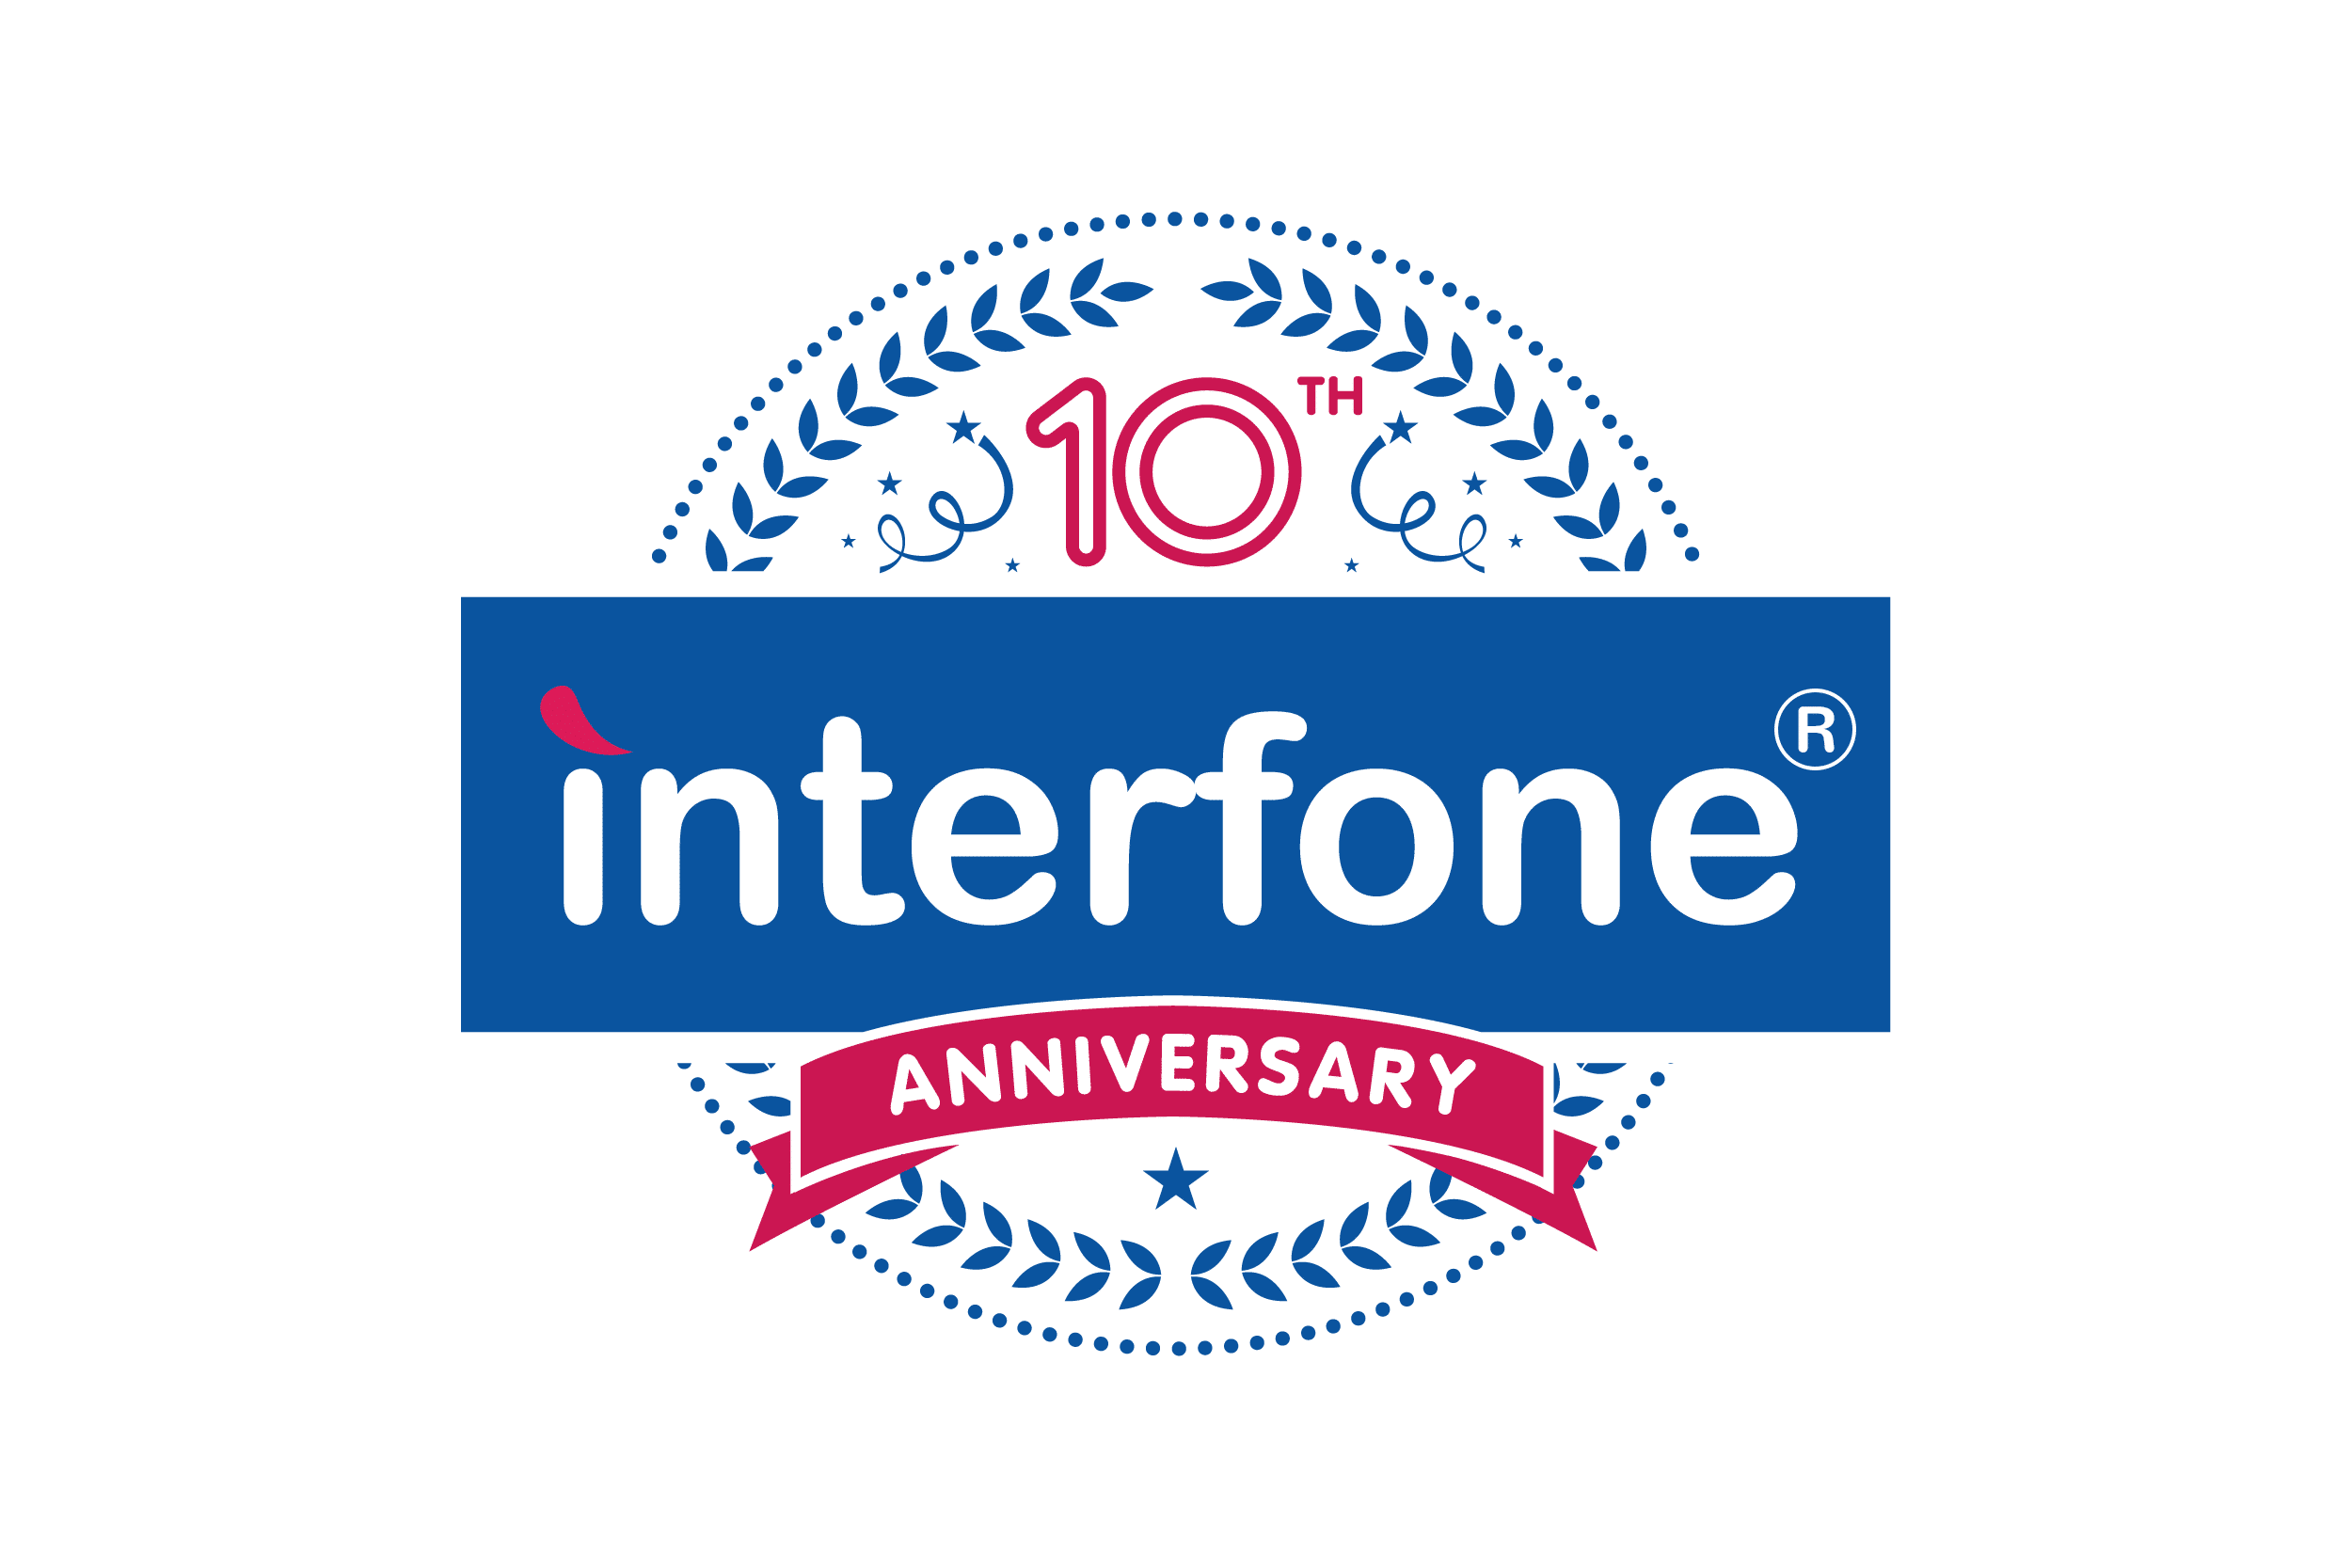 Interfone